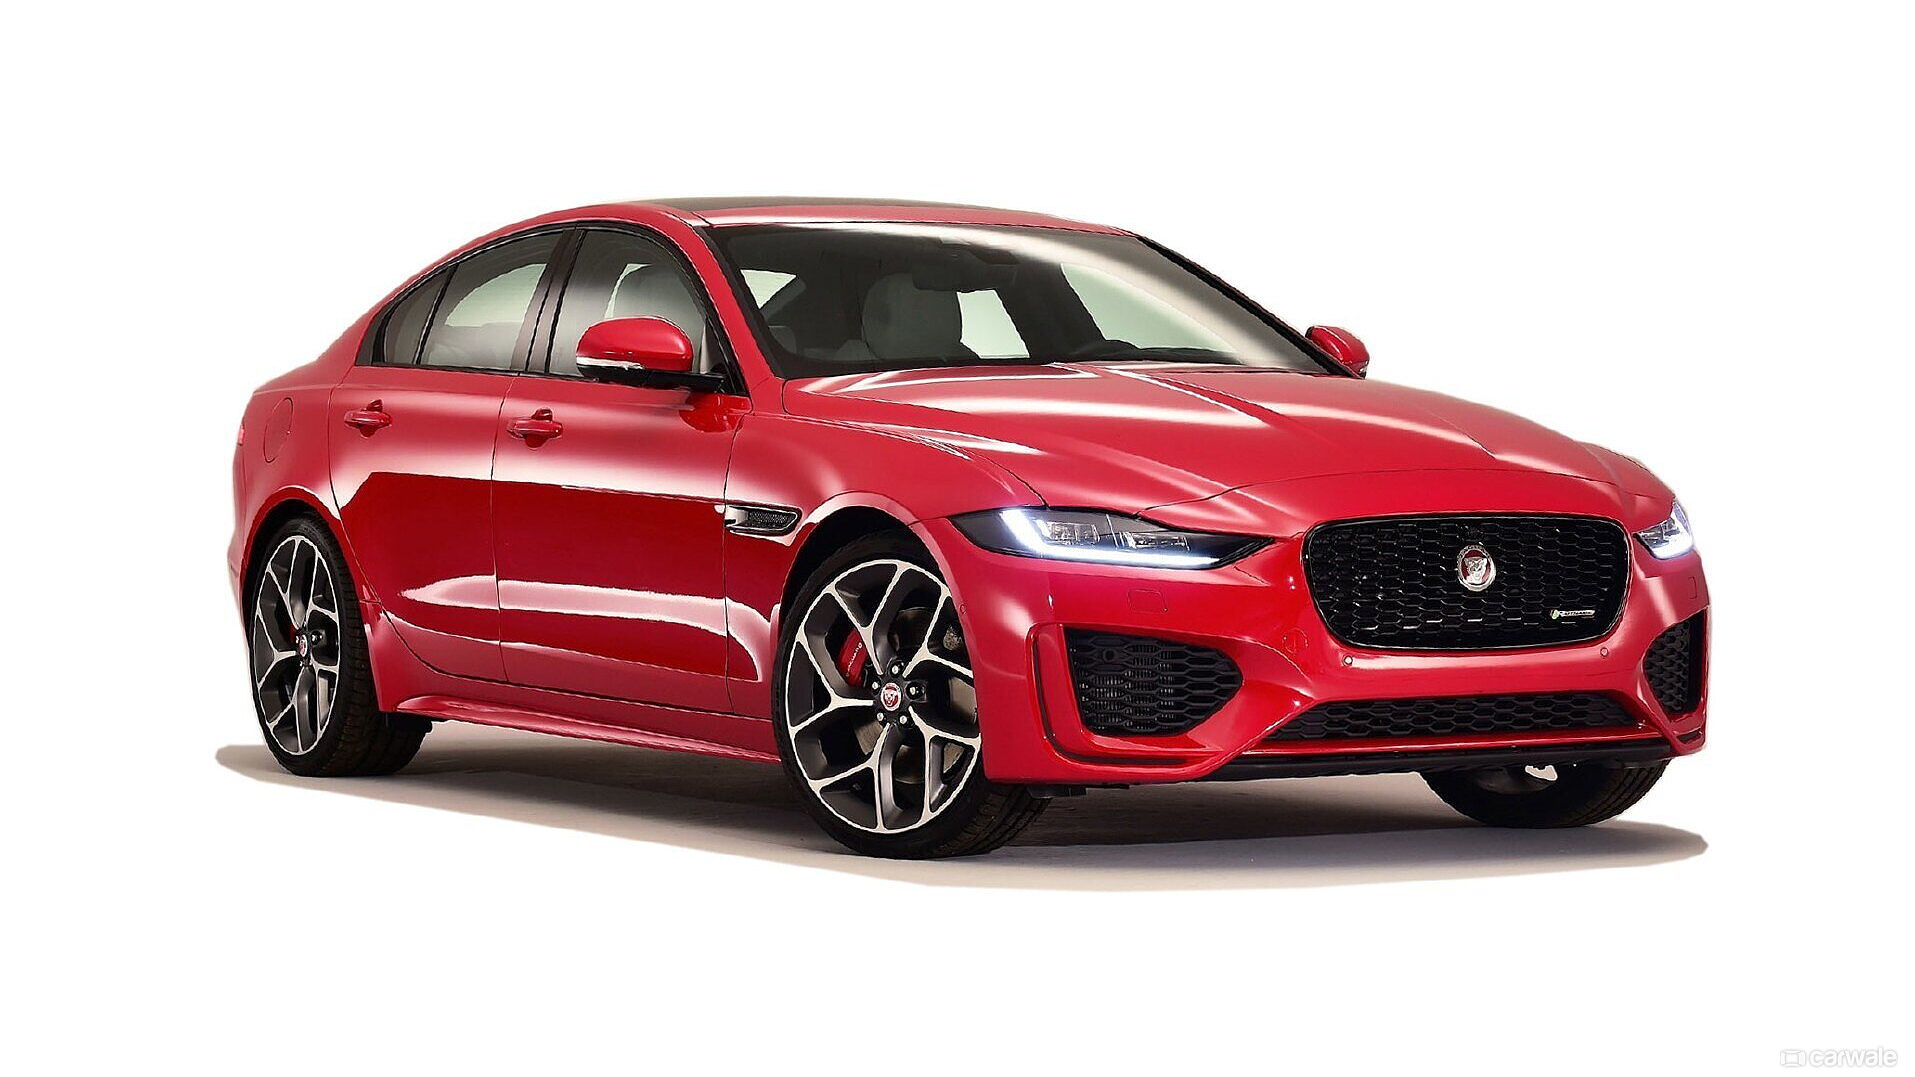 https://imgd.aeplcdn.com/1920x1080/cw/ec/43356/Jaguar-XE-Facelift-Right-Front-Three-Quarter-175914.jpg?wm=1&q=80&q=80